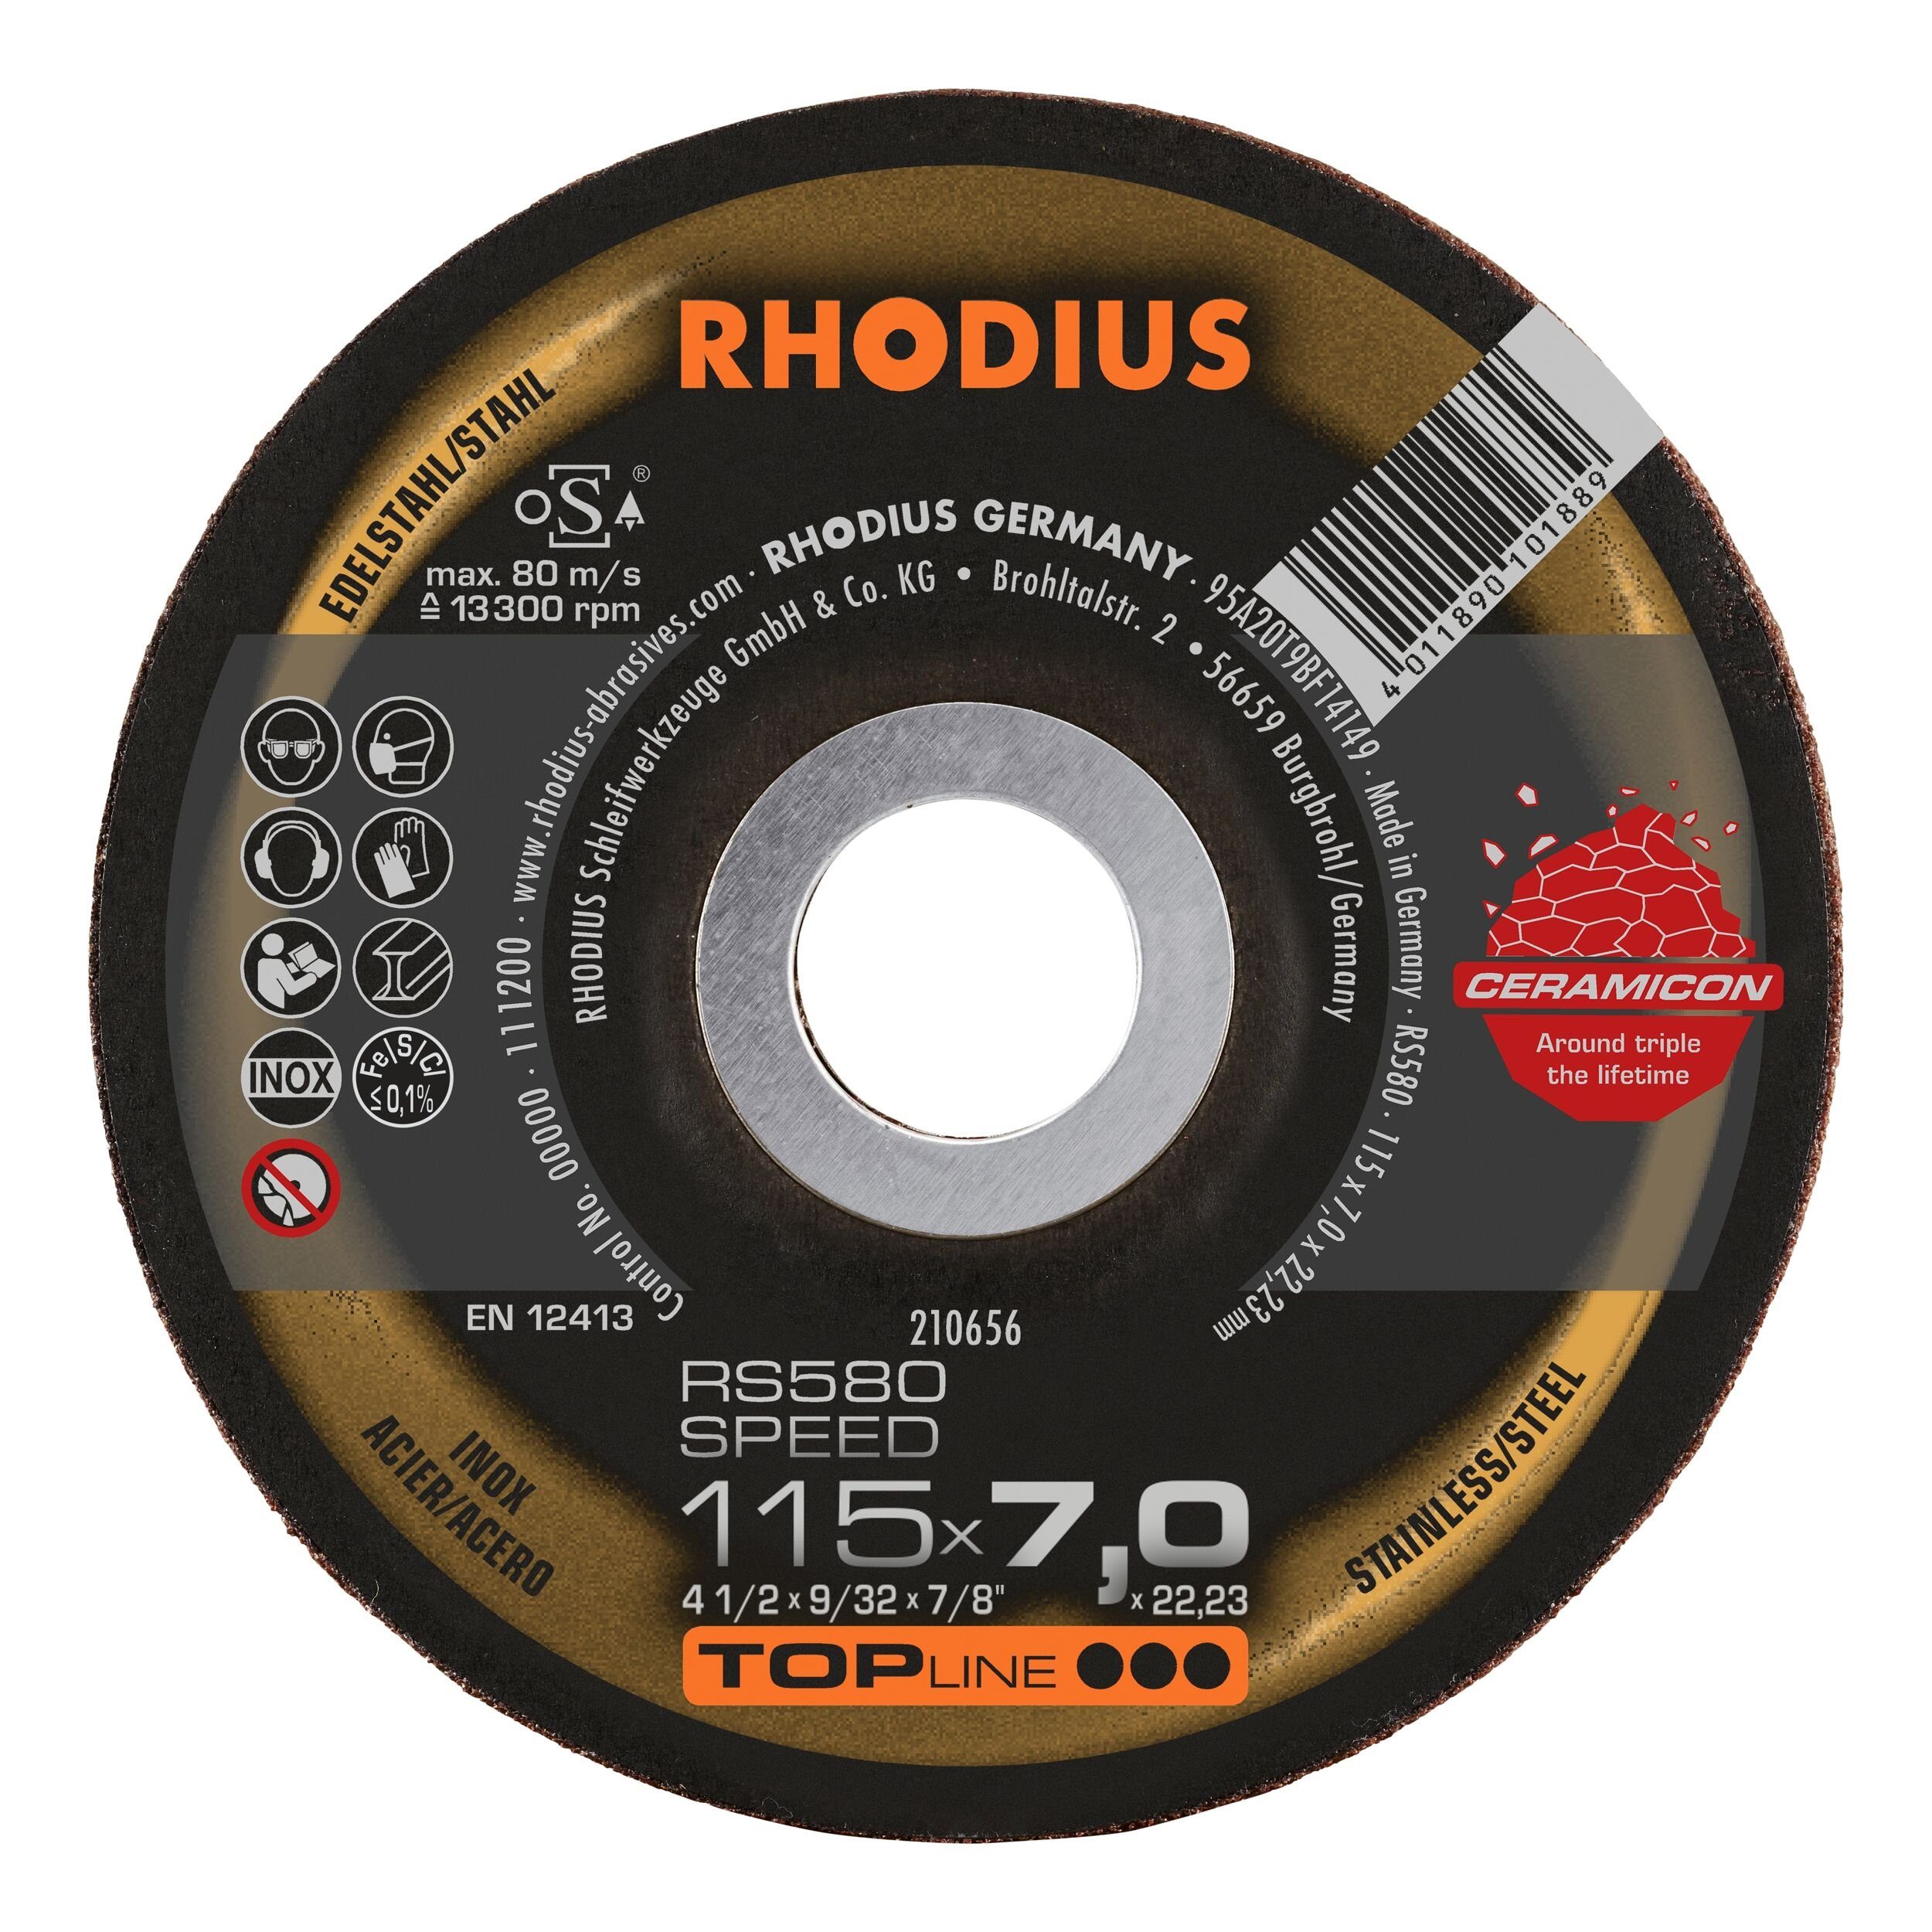 Rhodius Schruppscheibe TOPline RS, Ø 115 mm, TOPline RS580 SPEED - 115 x 7 x 22,23 mm